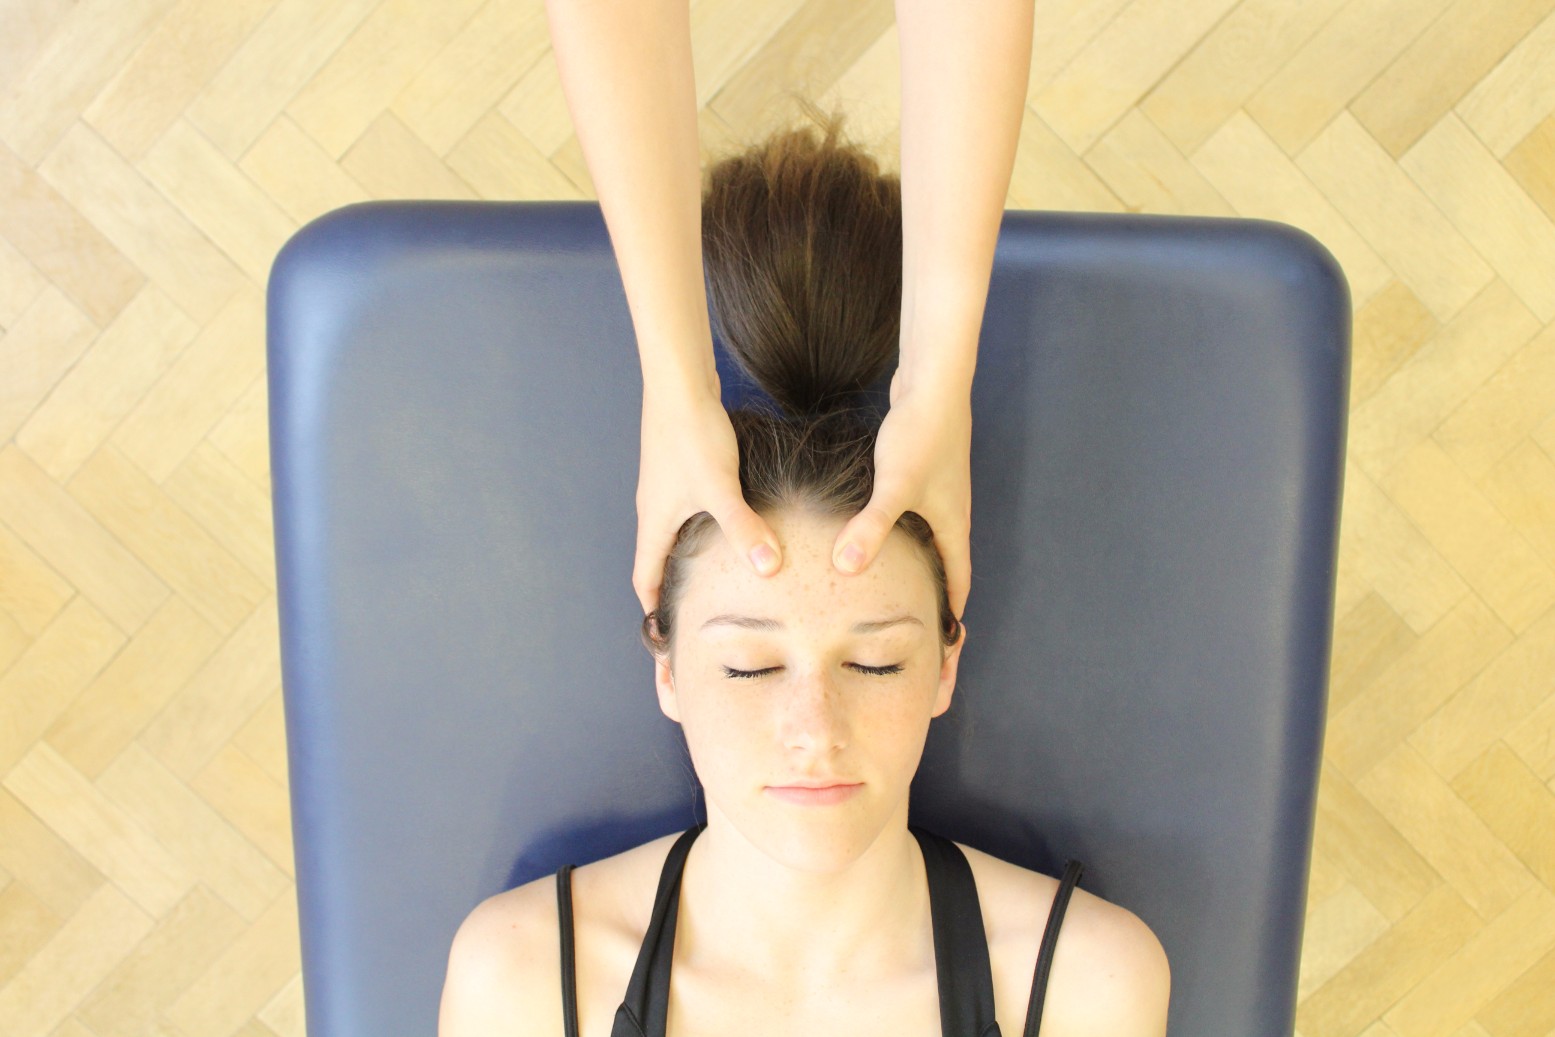 Client receiving head massage.